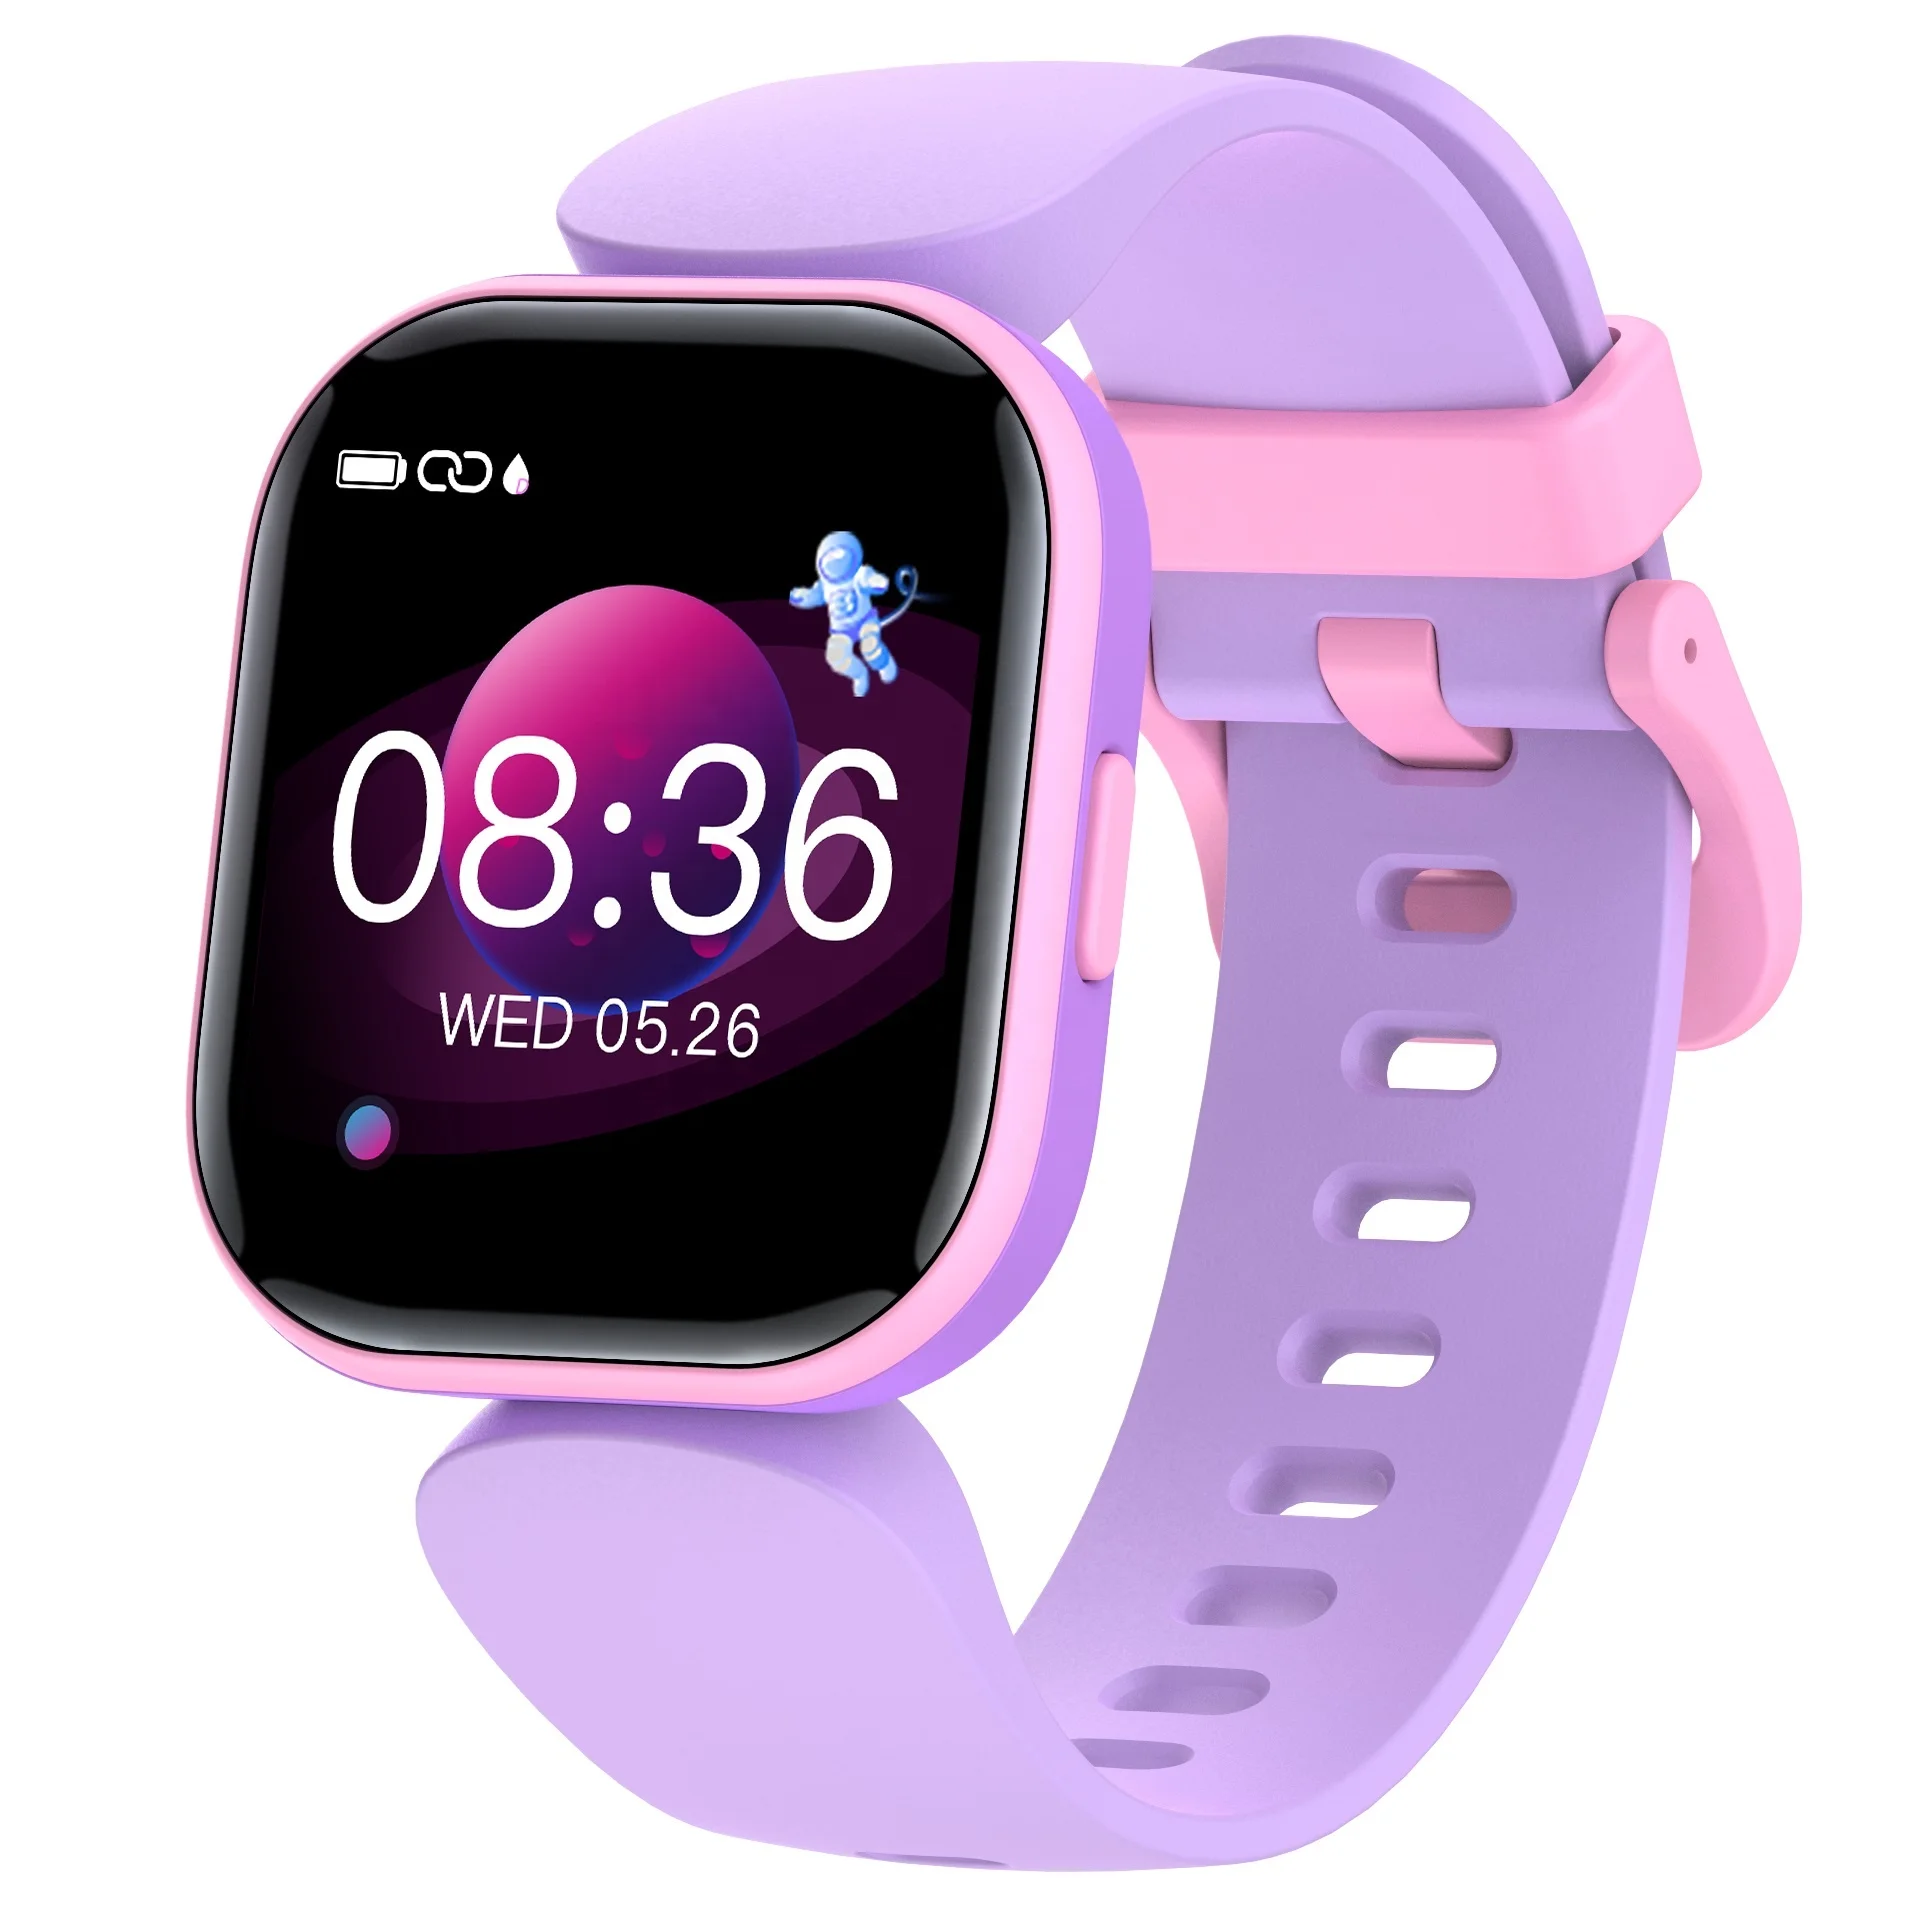 Compre Mejor Reloj Inteligente Para Niños Para Walmart  Reloj Inteligente  Mujer Reloj Inteligente y Reloj Inteligente de China por 13.9 USD